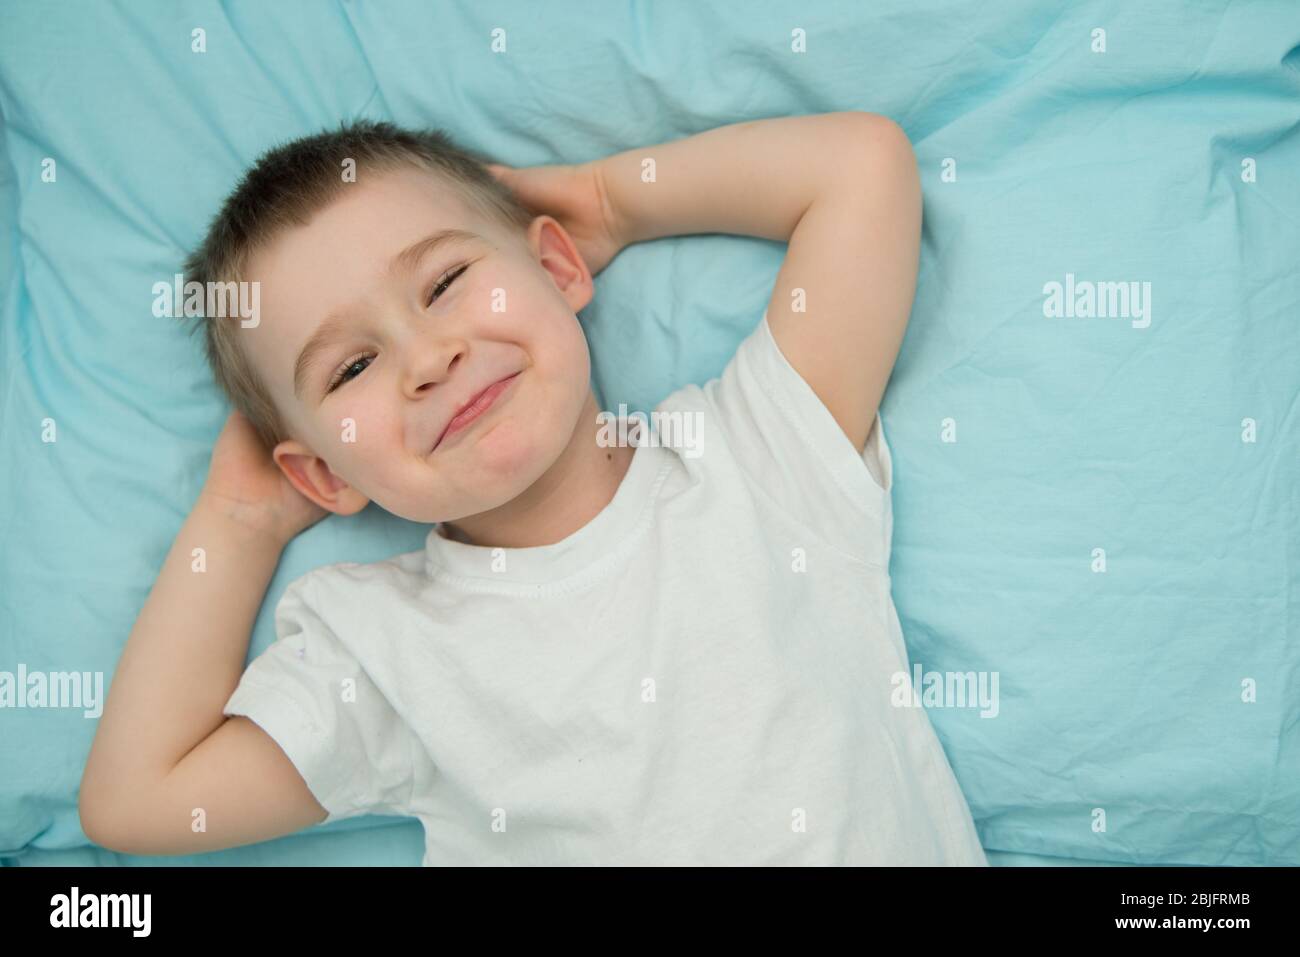 Der kleine Junge wacht in seinem Bett auf und lächelt. Kleinkind im weißen Hemd schaut zur Kamera Stockfoto